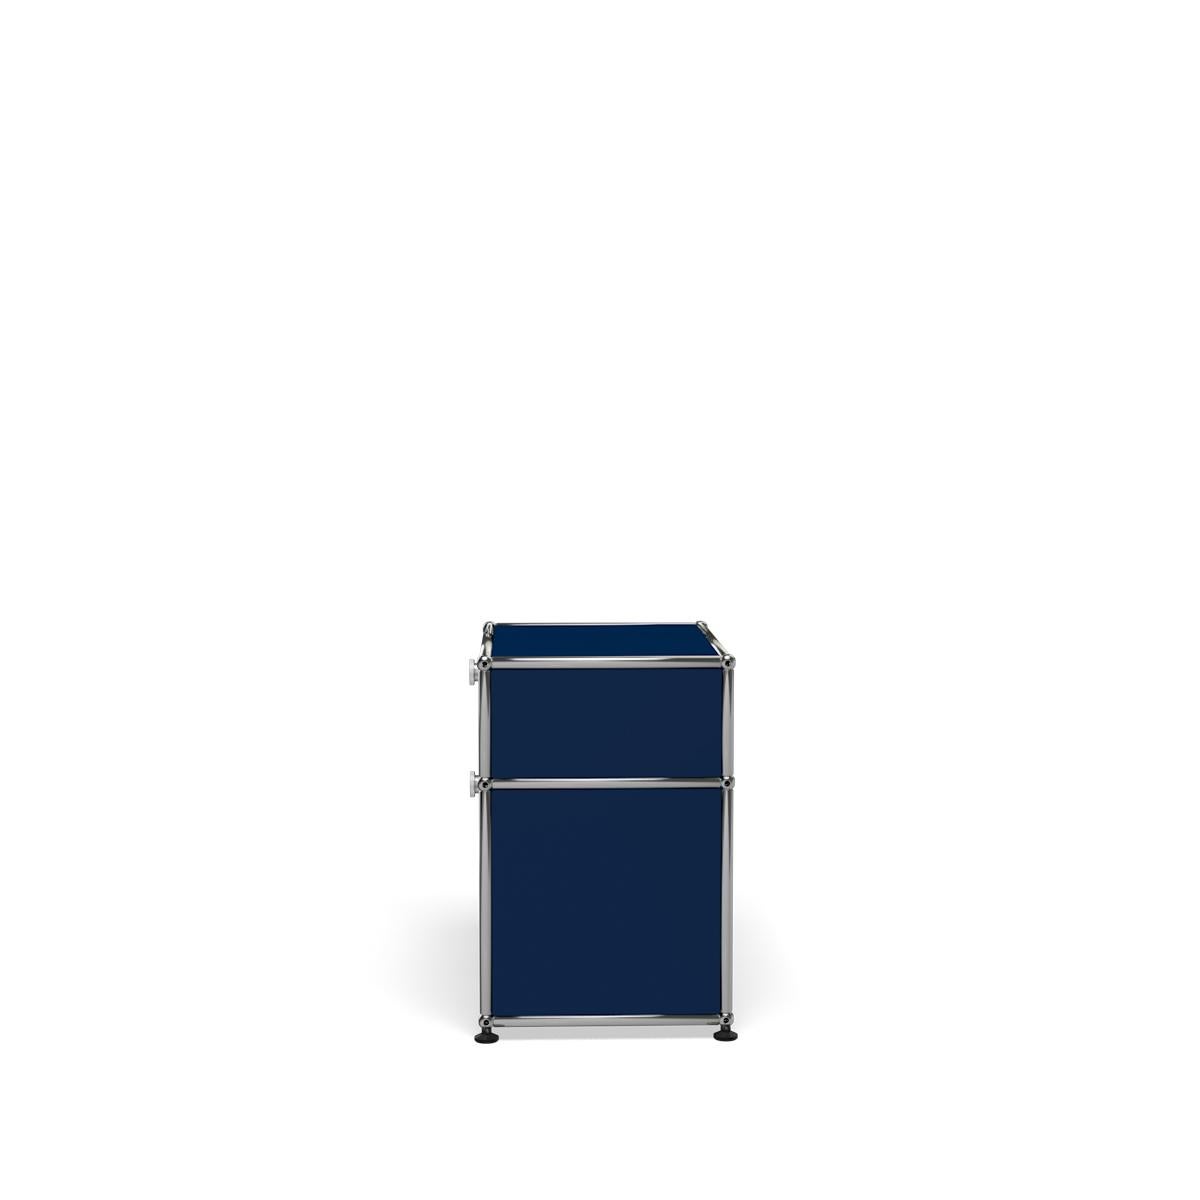 For Sale: Blue (Steel Blue) USM Haller Nightstand P1 Storage System 3